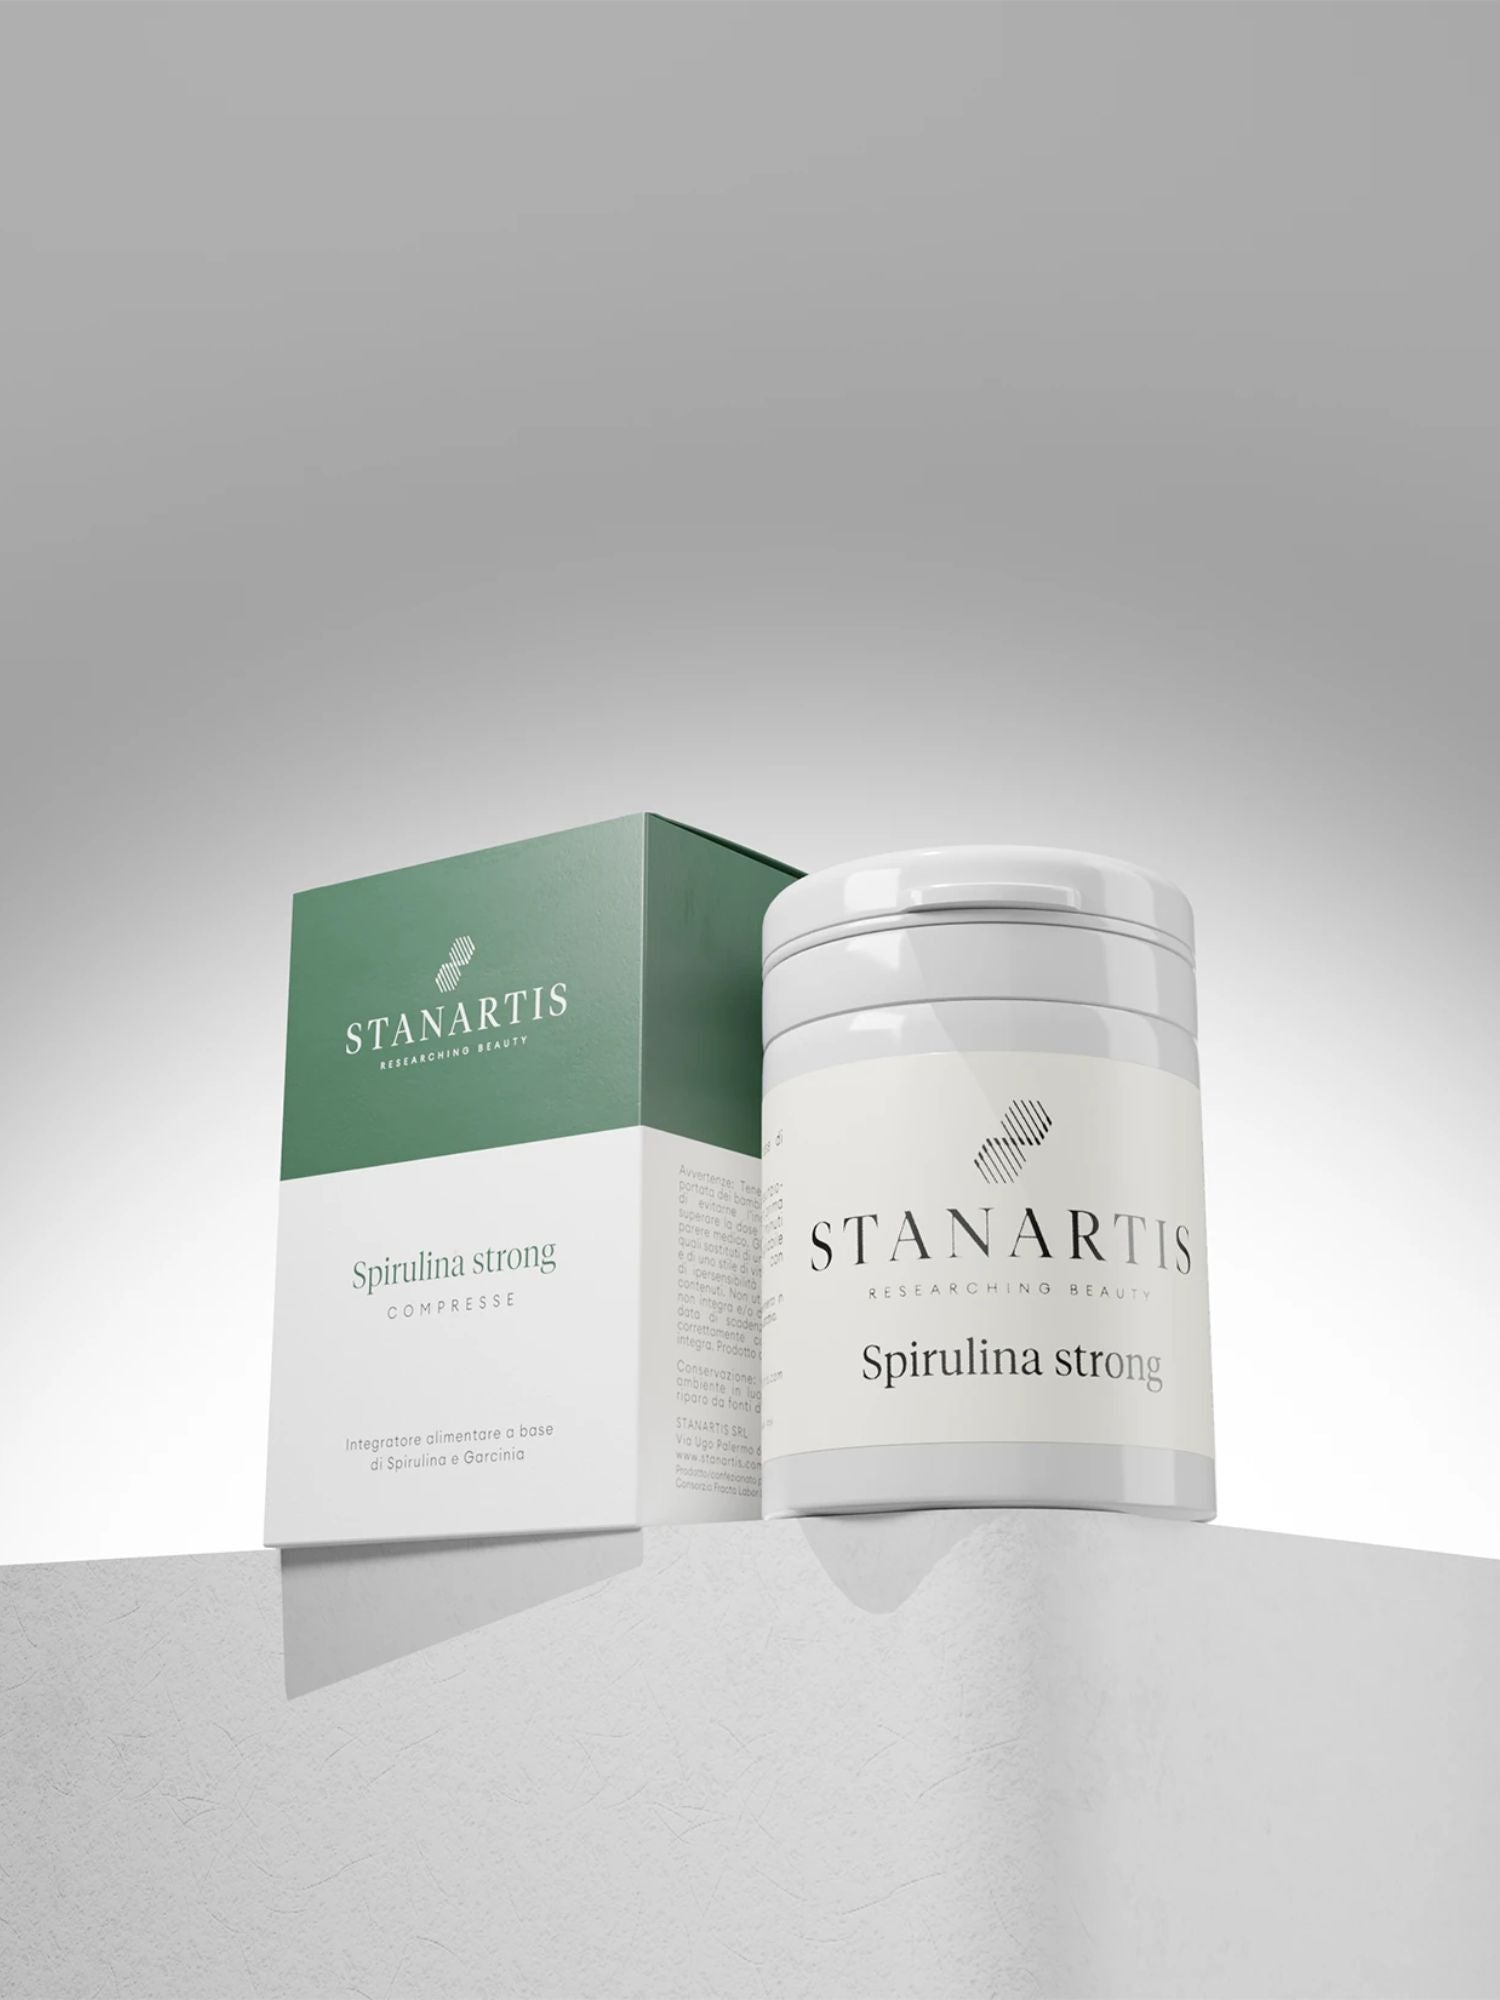 Spirulina Strong weight loss supplement